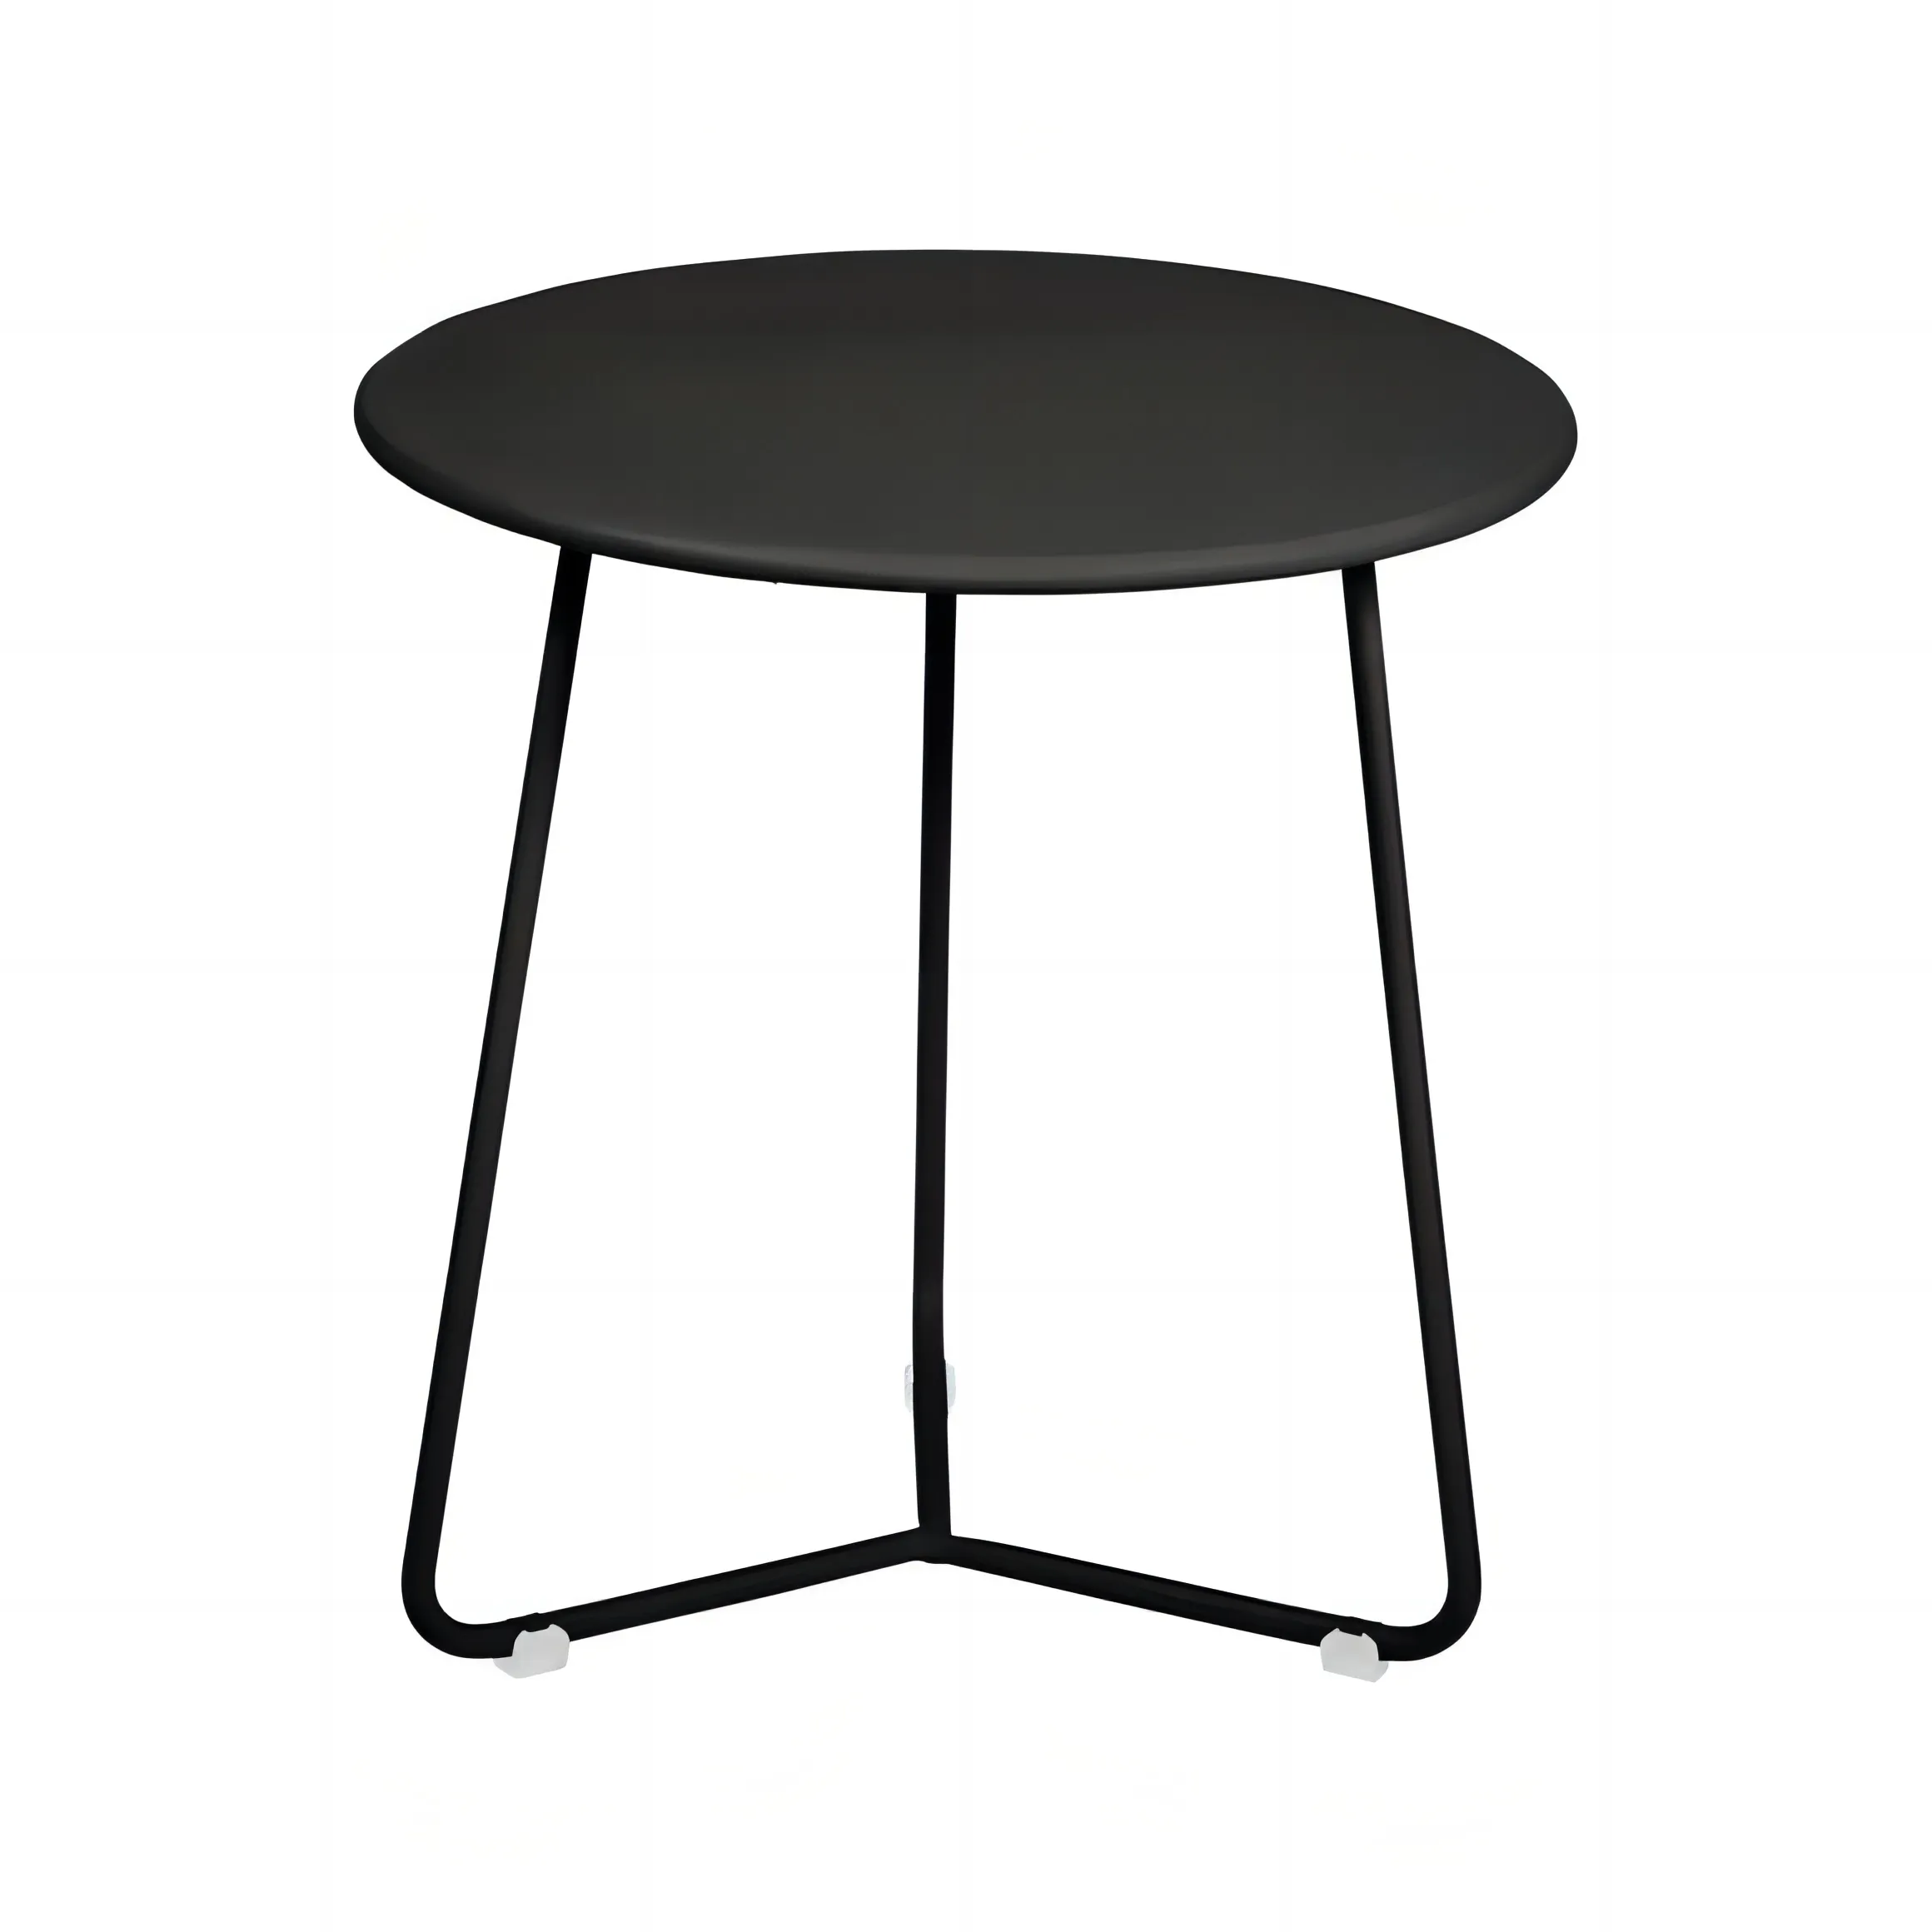 Kleiner schwarzer Metall-Beistell tisch Wasserdichter runder Innen-Kaffee-Tee-Beistell tisch im Freien Patio Durable Designed Small Patio Table